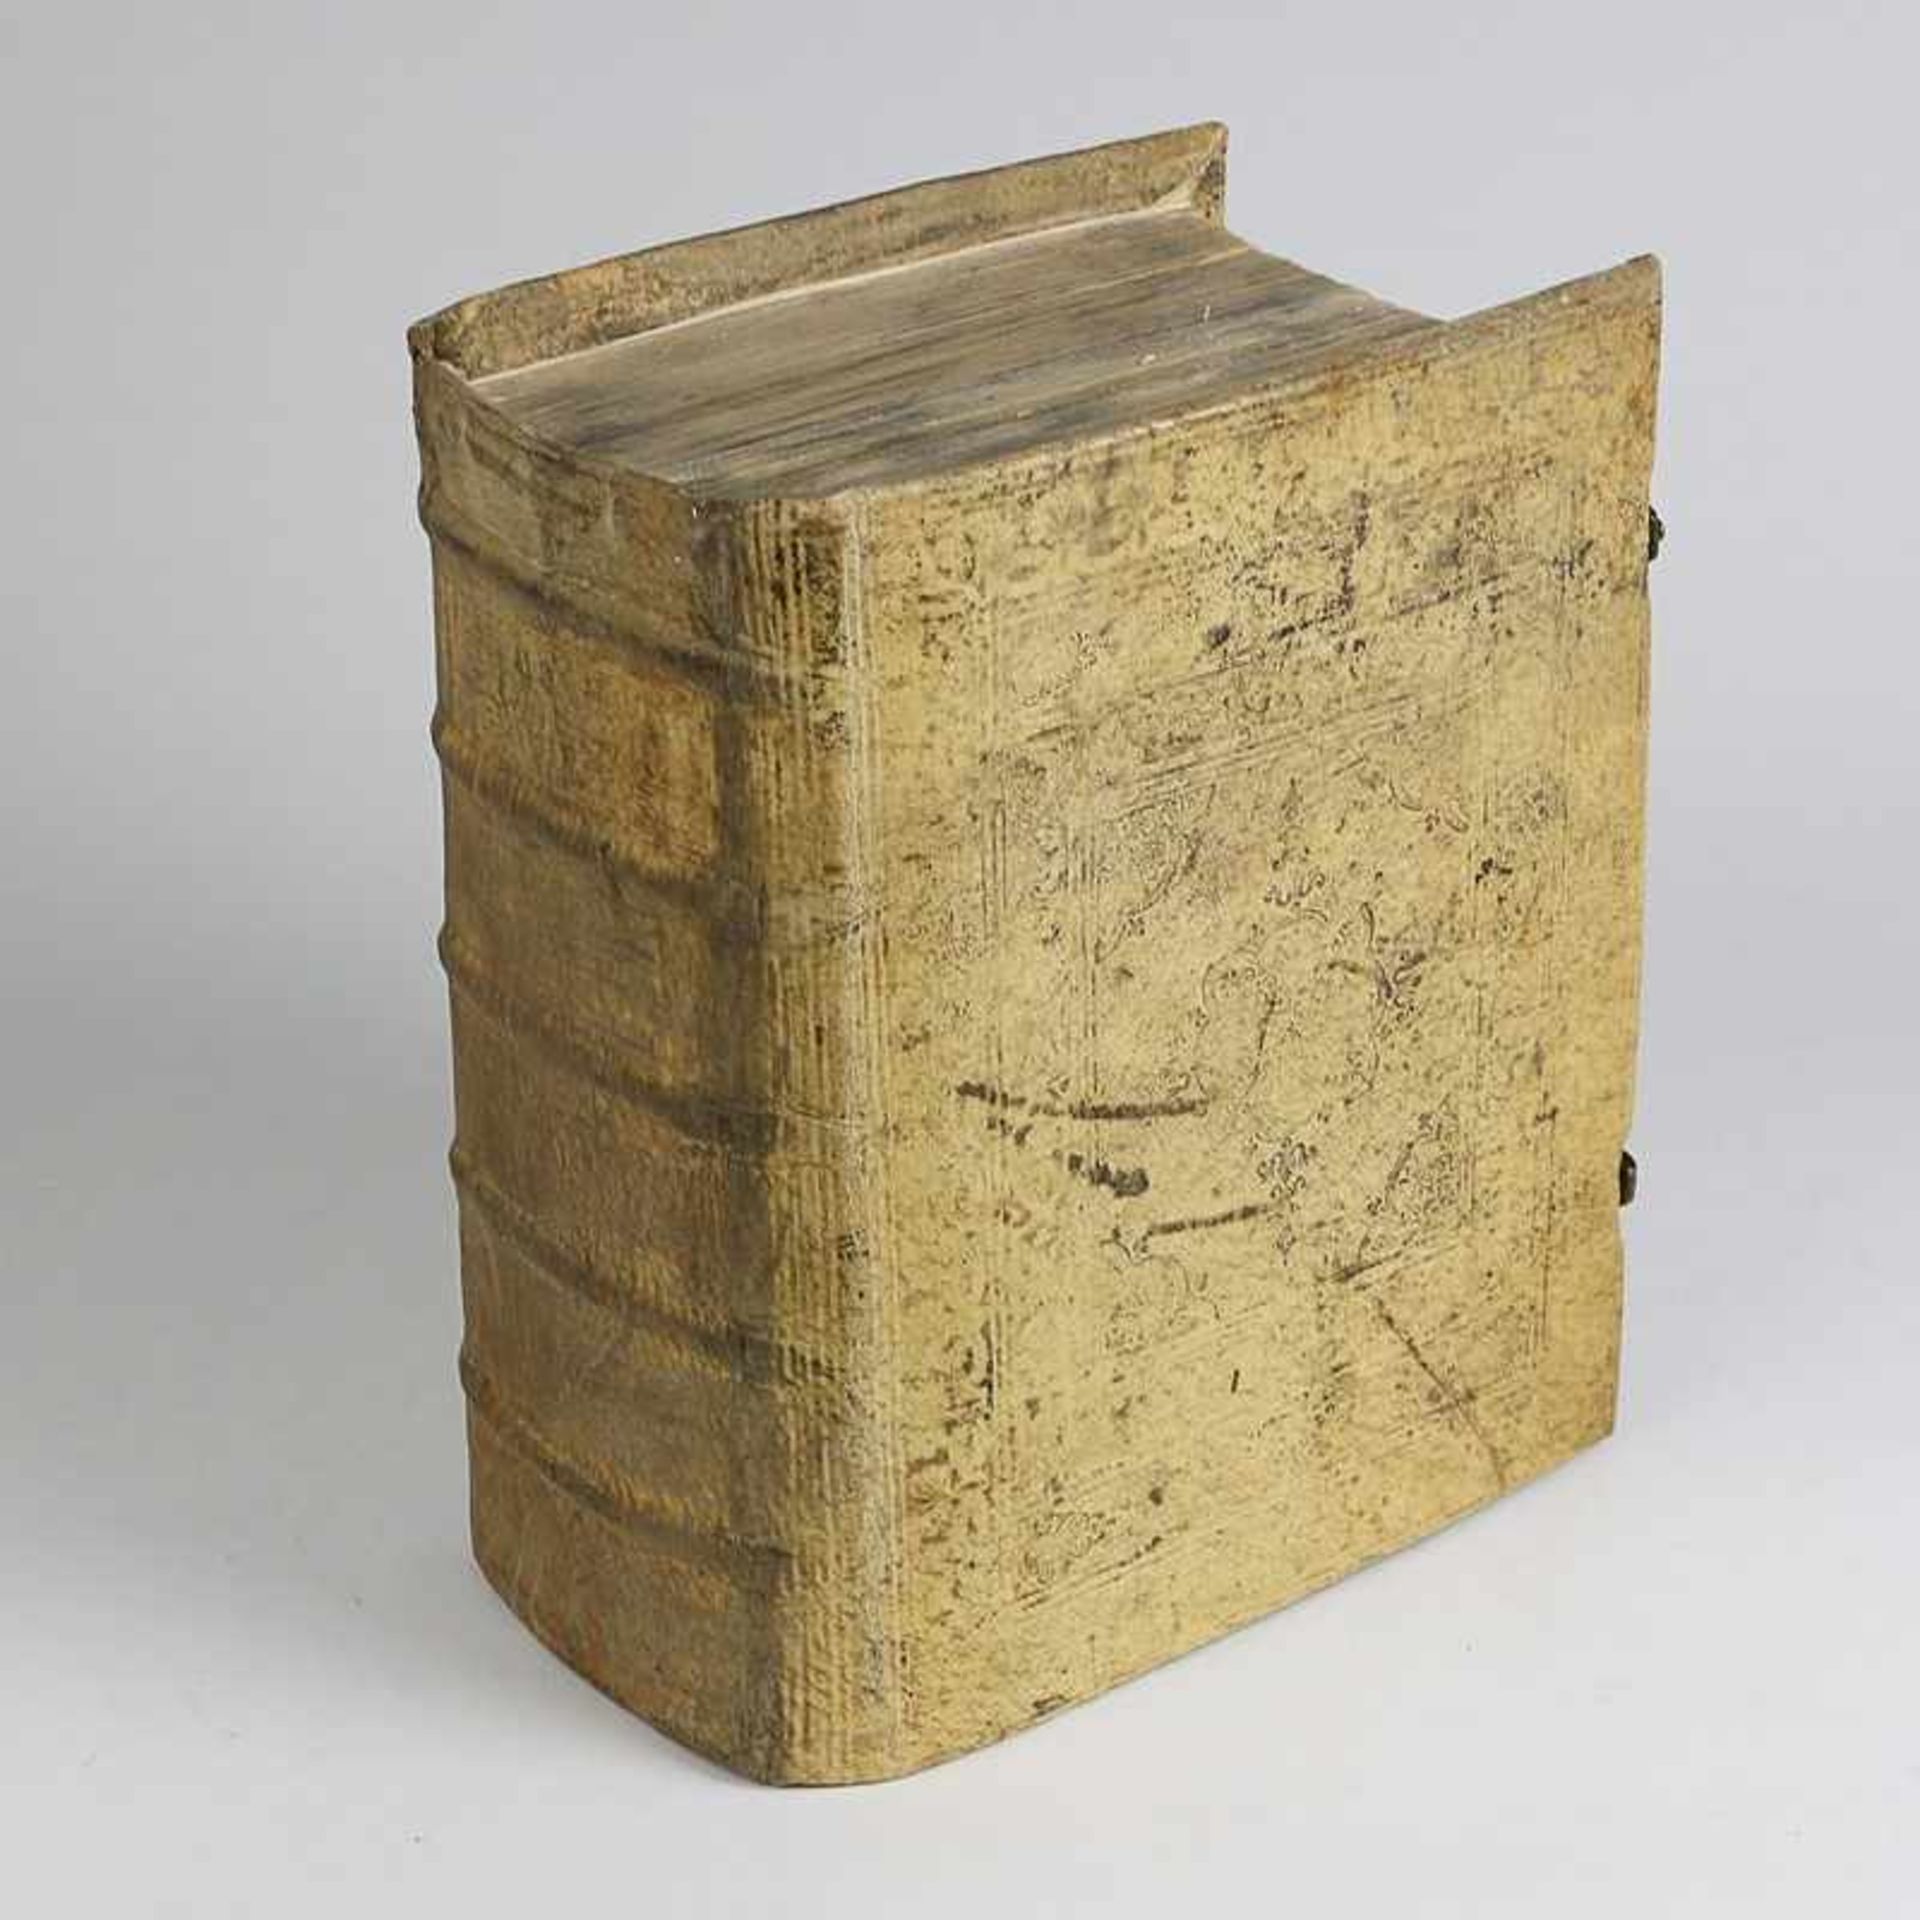 Bibel Onoldsbach u. Weissenburg am Norgau Lorenz Helmhack 1713, 1194 S + 378 S., Titelblatt altes